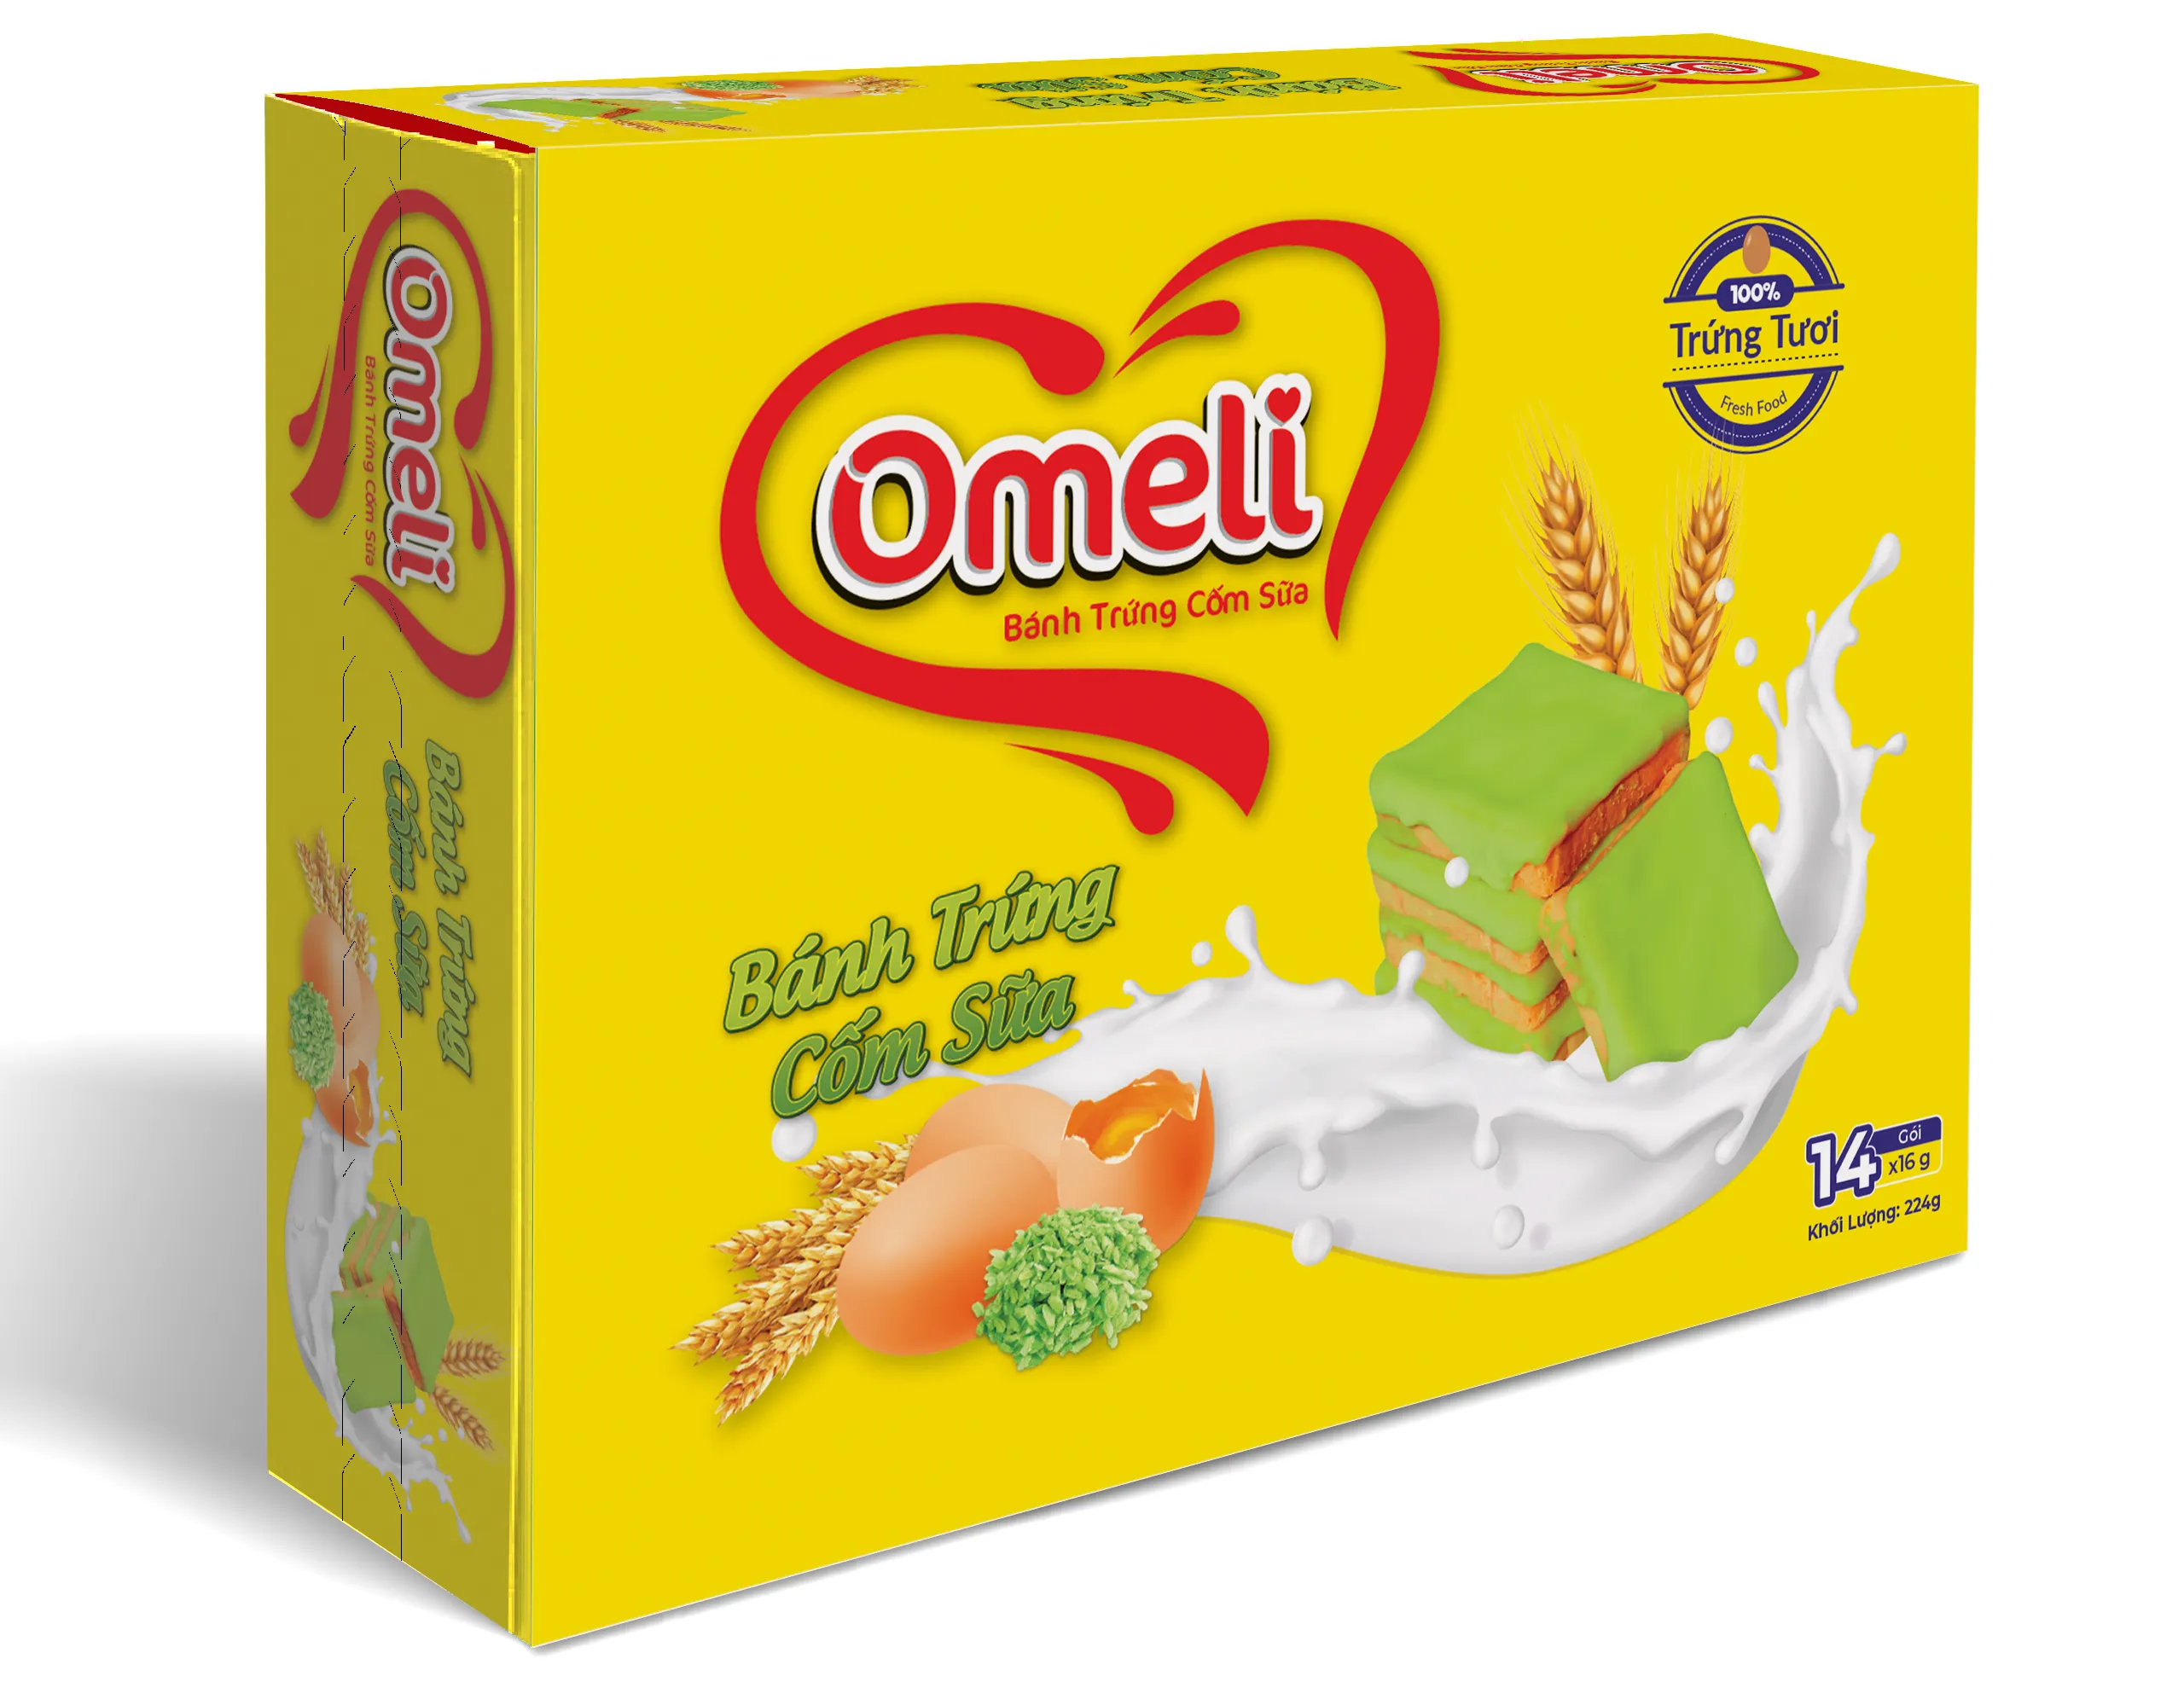 Produk grosir kue krim telur dalam kotak kertas 224 g-renyah dan Lezat-dengan telur segar-OEM tersedia buatan Vietnam